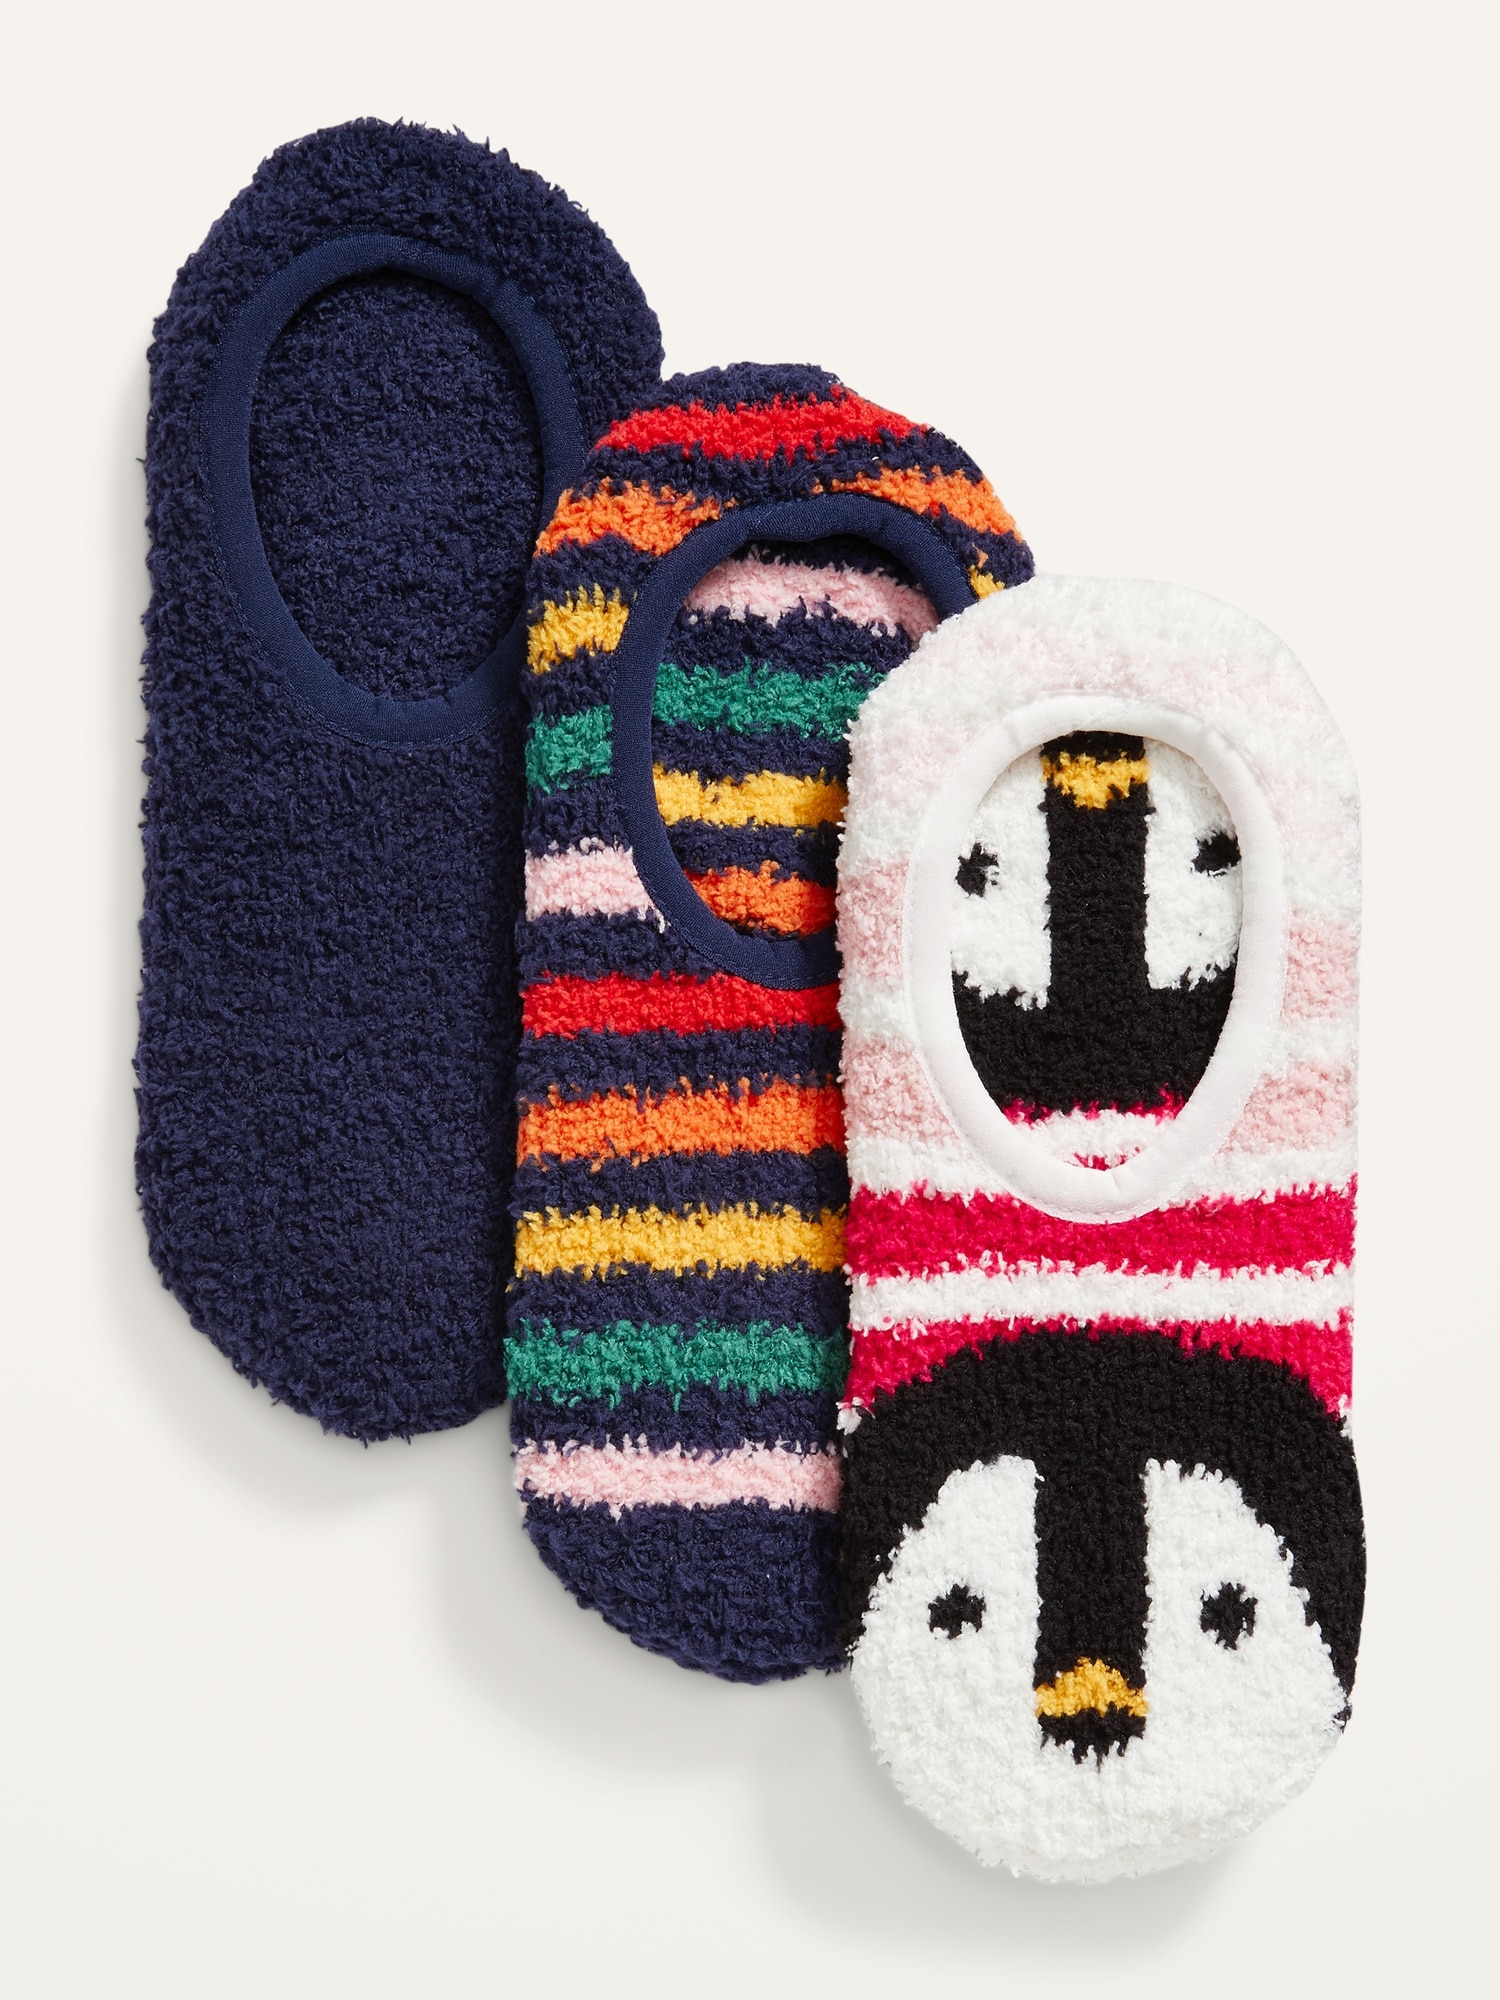 Cozy Gripper Socks 3-Pack for Women